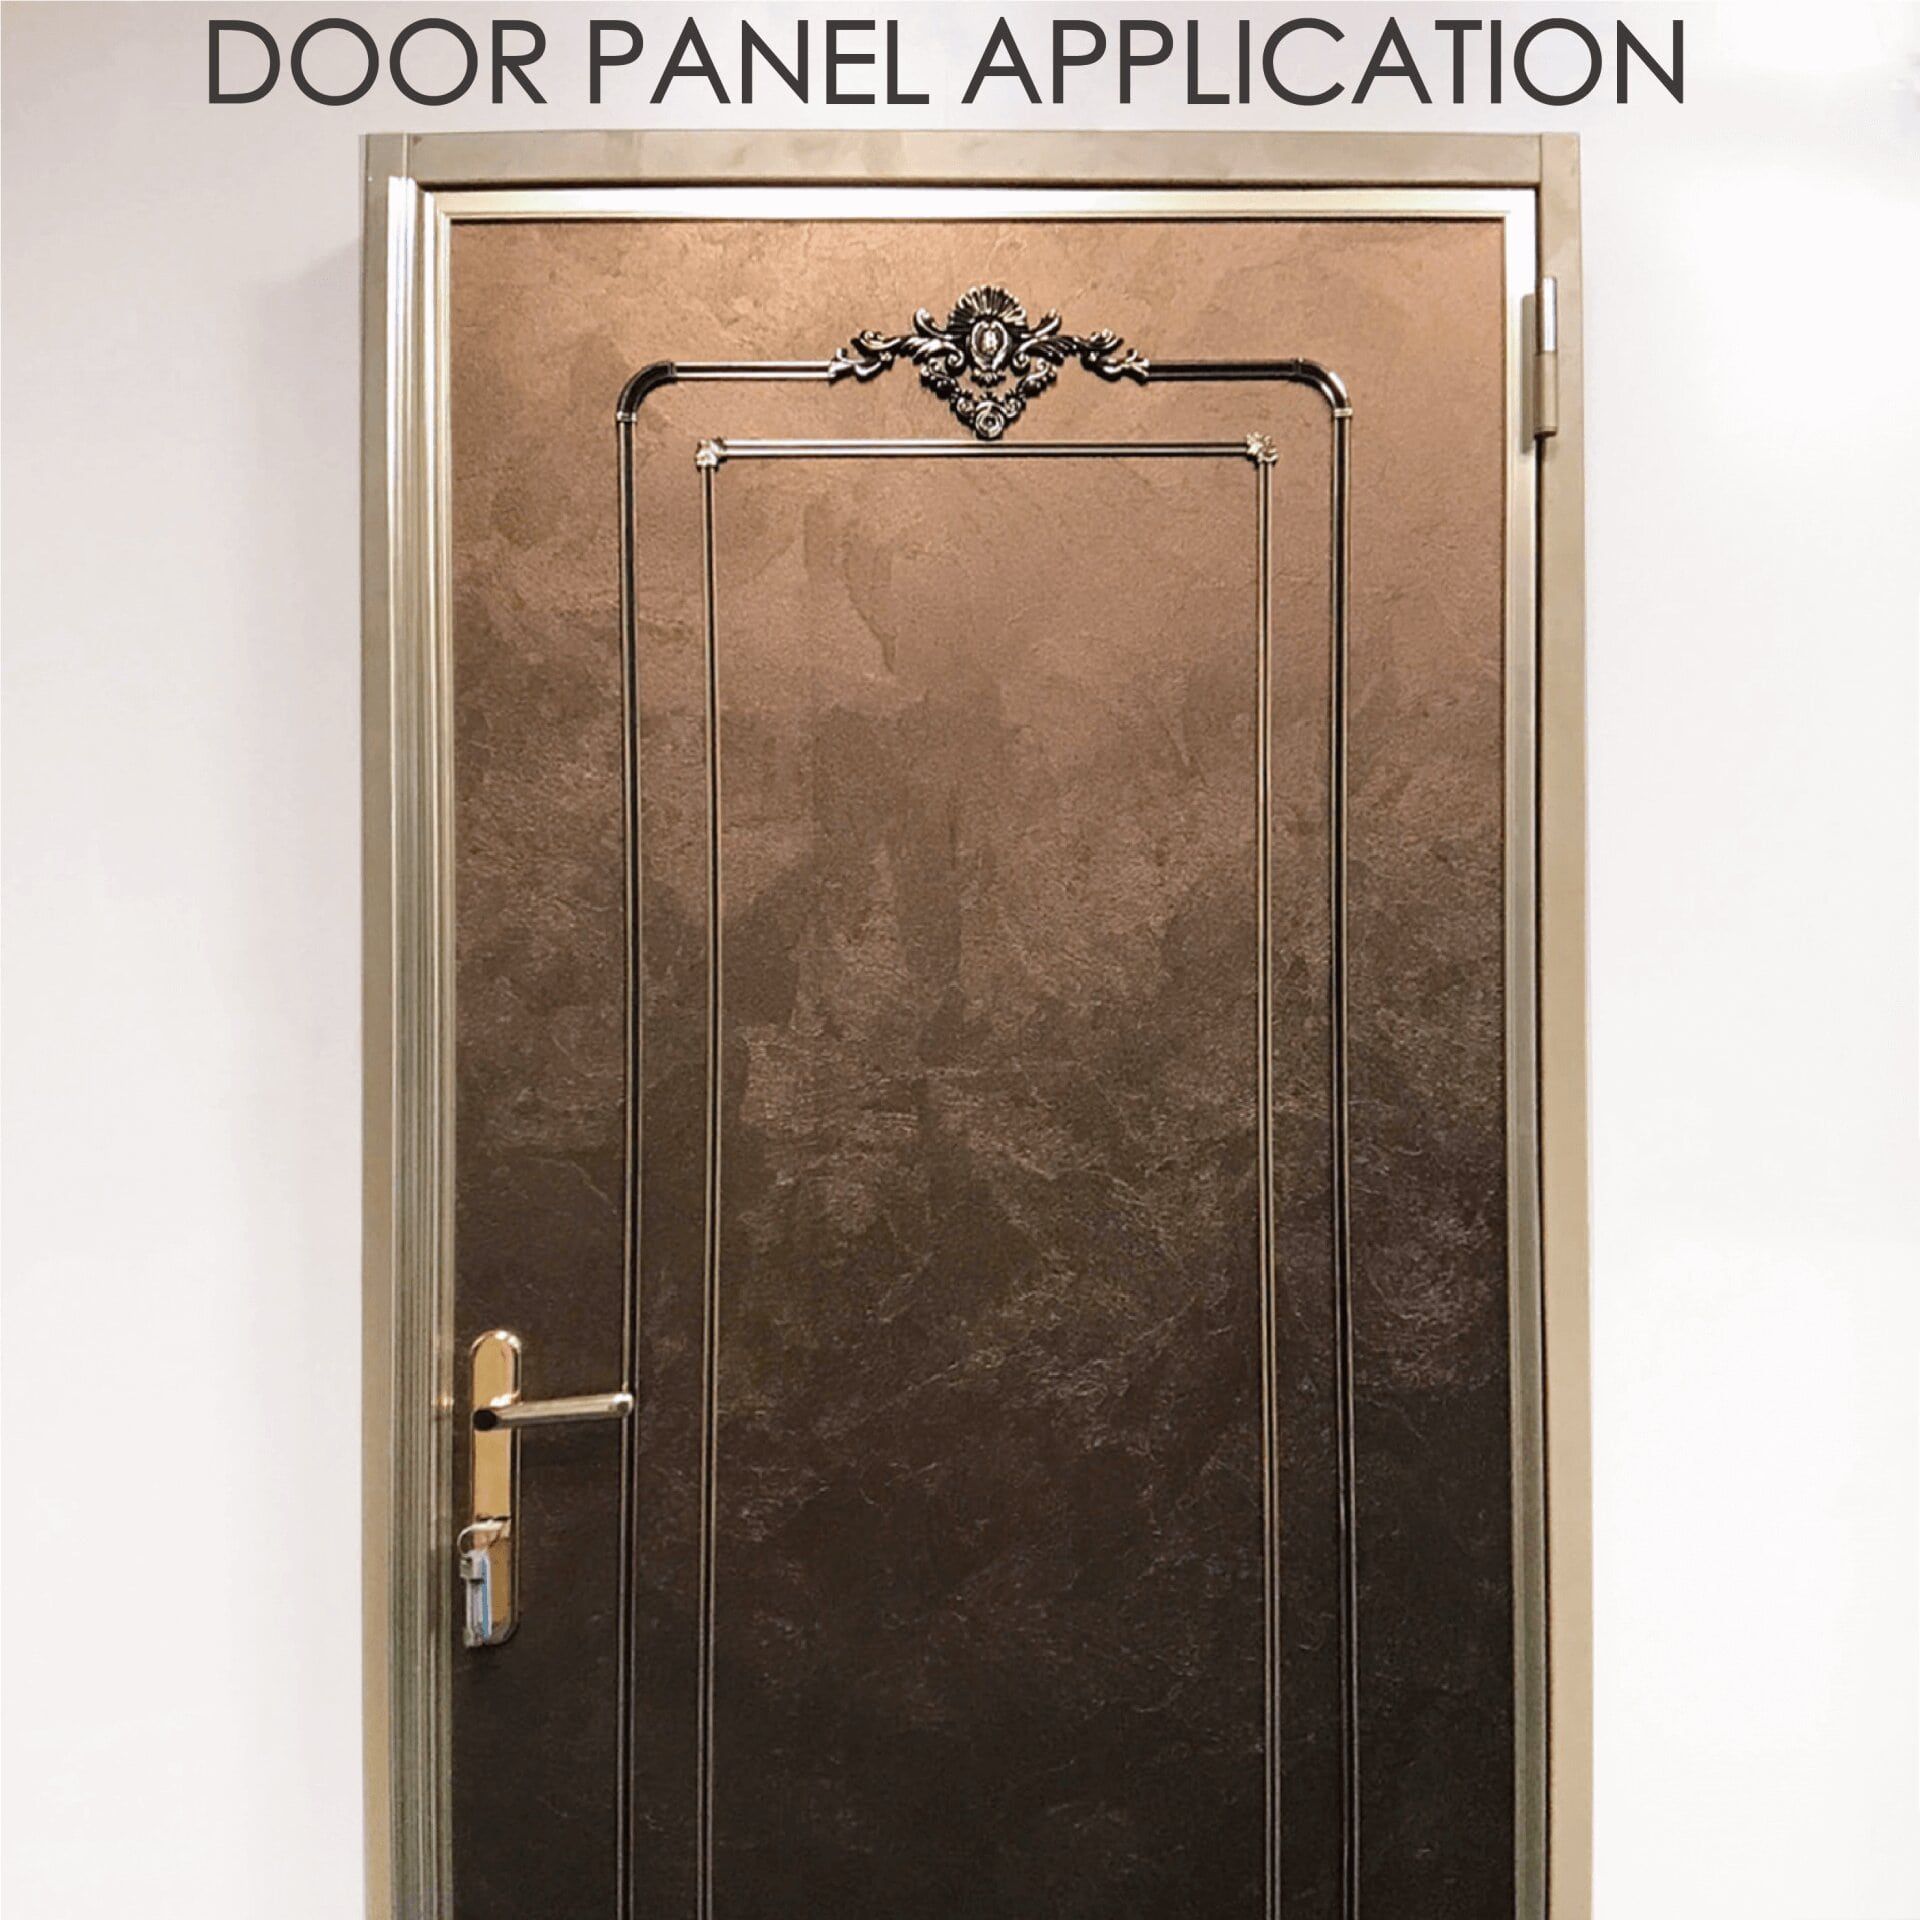 Заміна дерев'яних дверей ламінованим металом може підвищити безпеку та довговічність.